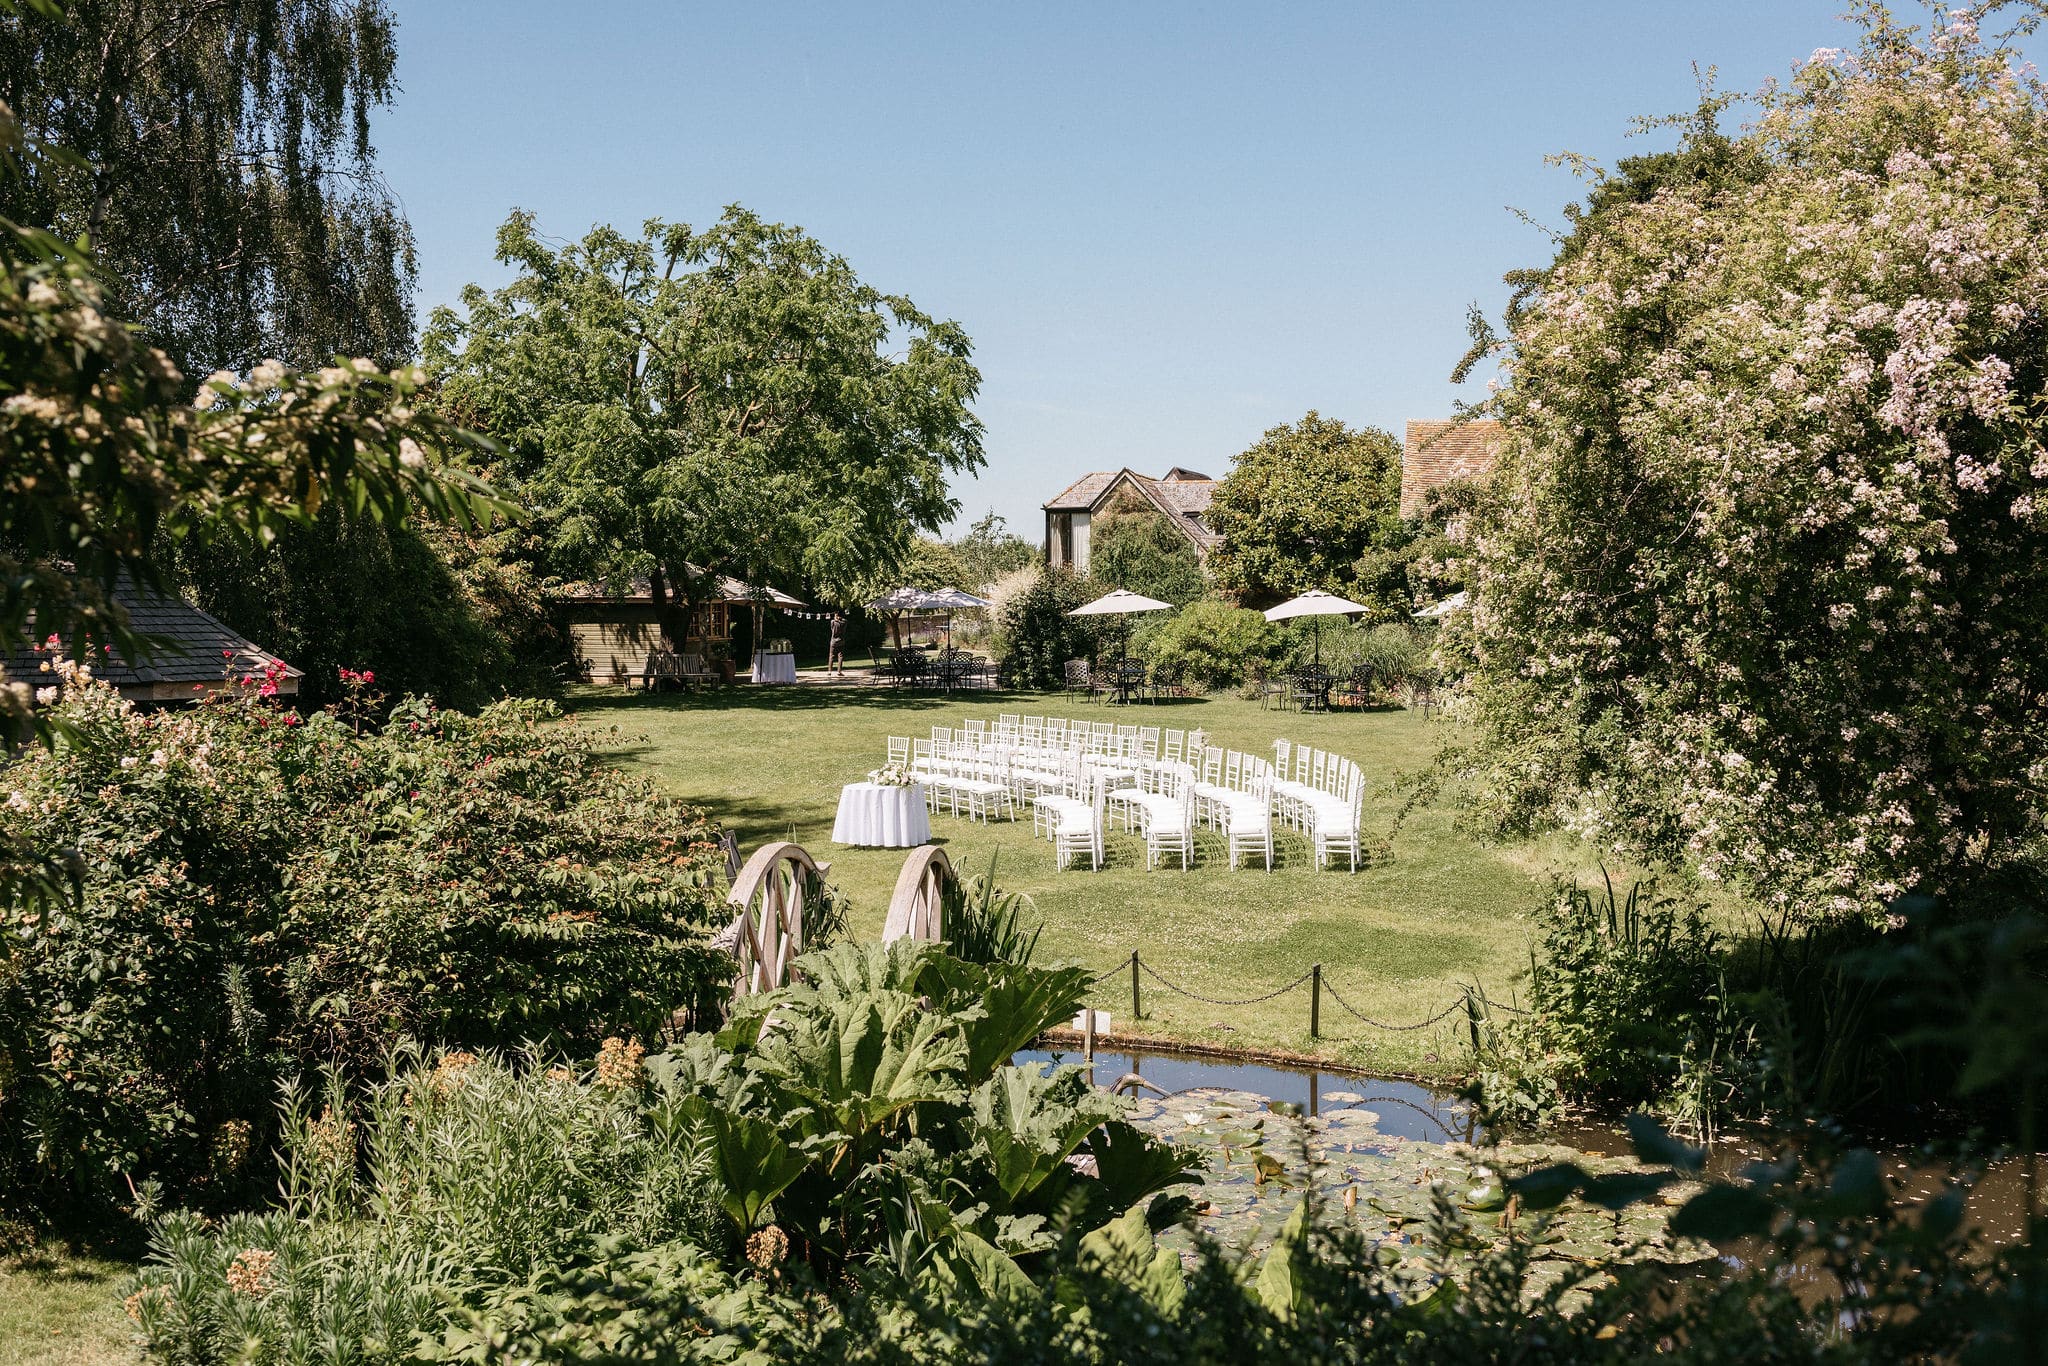 Summer Garden set for outdoor wedding ceremony